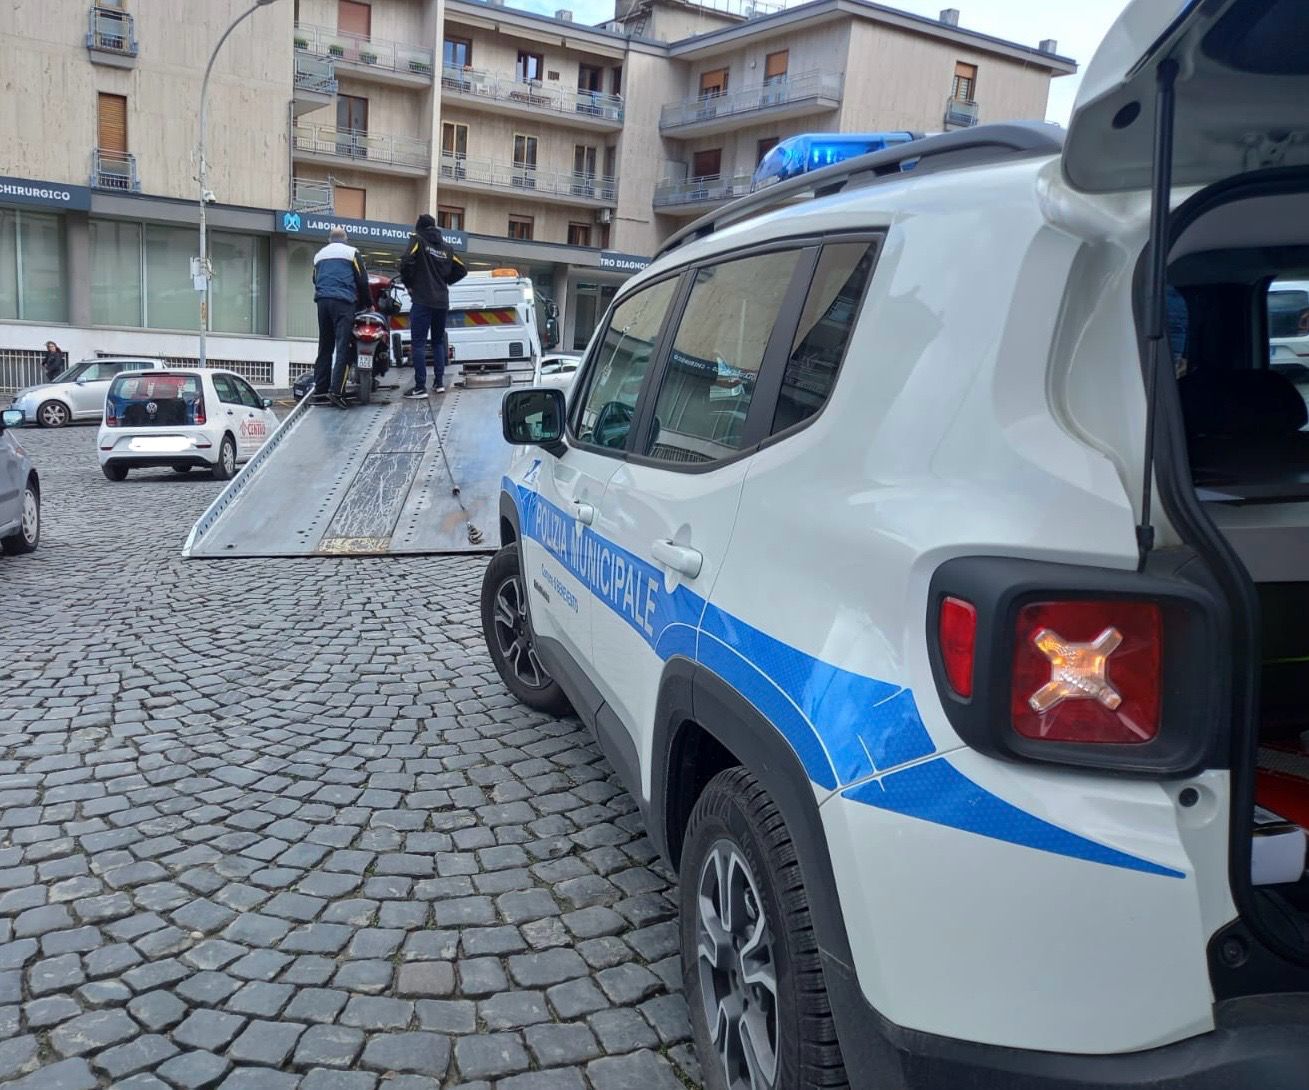 Benevento| Operazione “decoro urbano”, elevate multe per 5000 euro